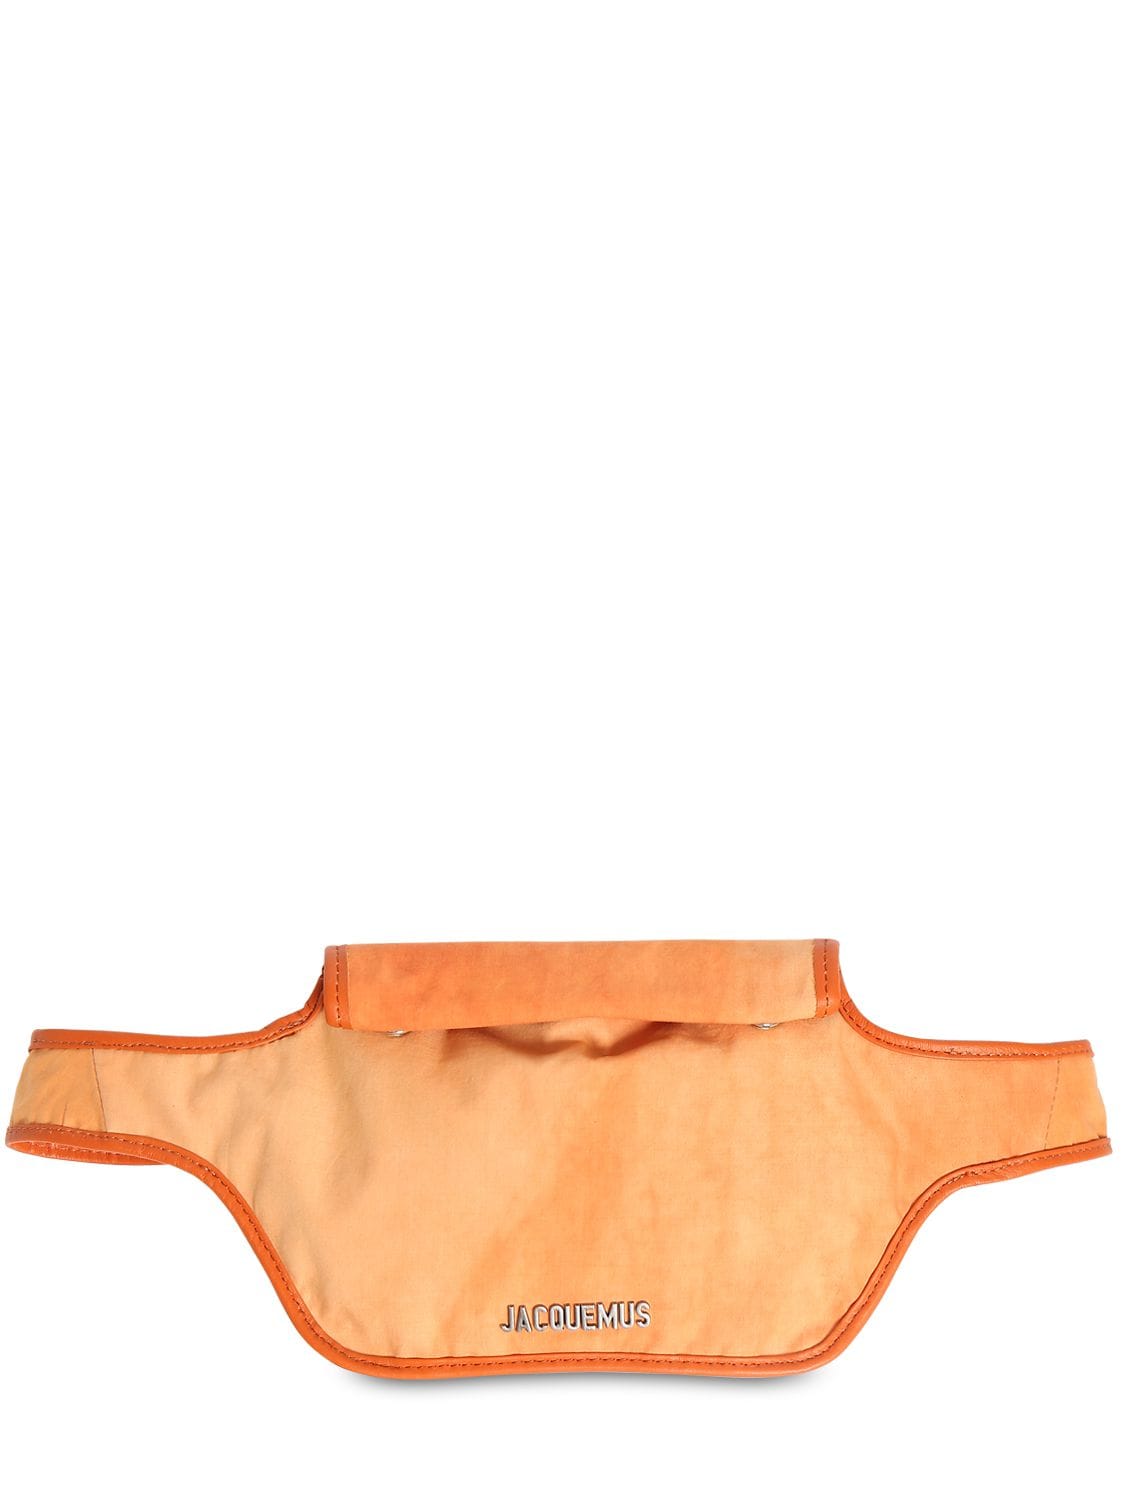 Jacquemus La Banane Cotton Canvas Belt Bag In Orange